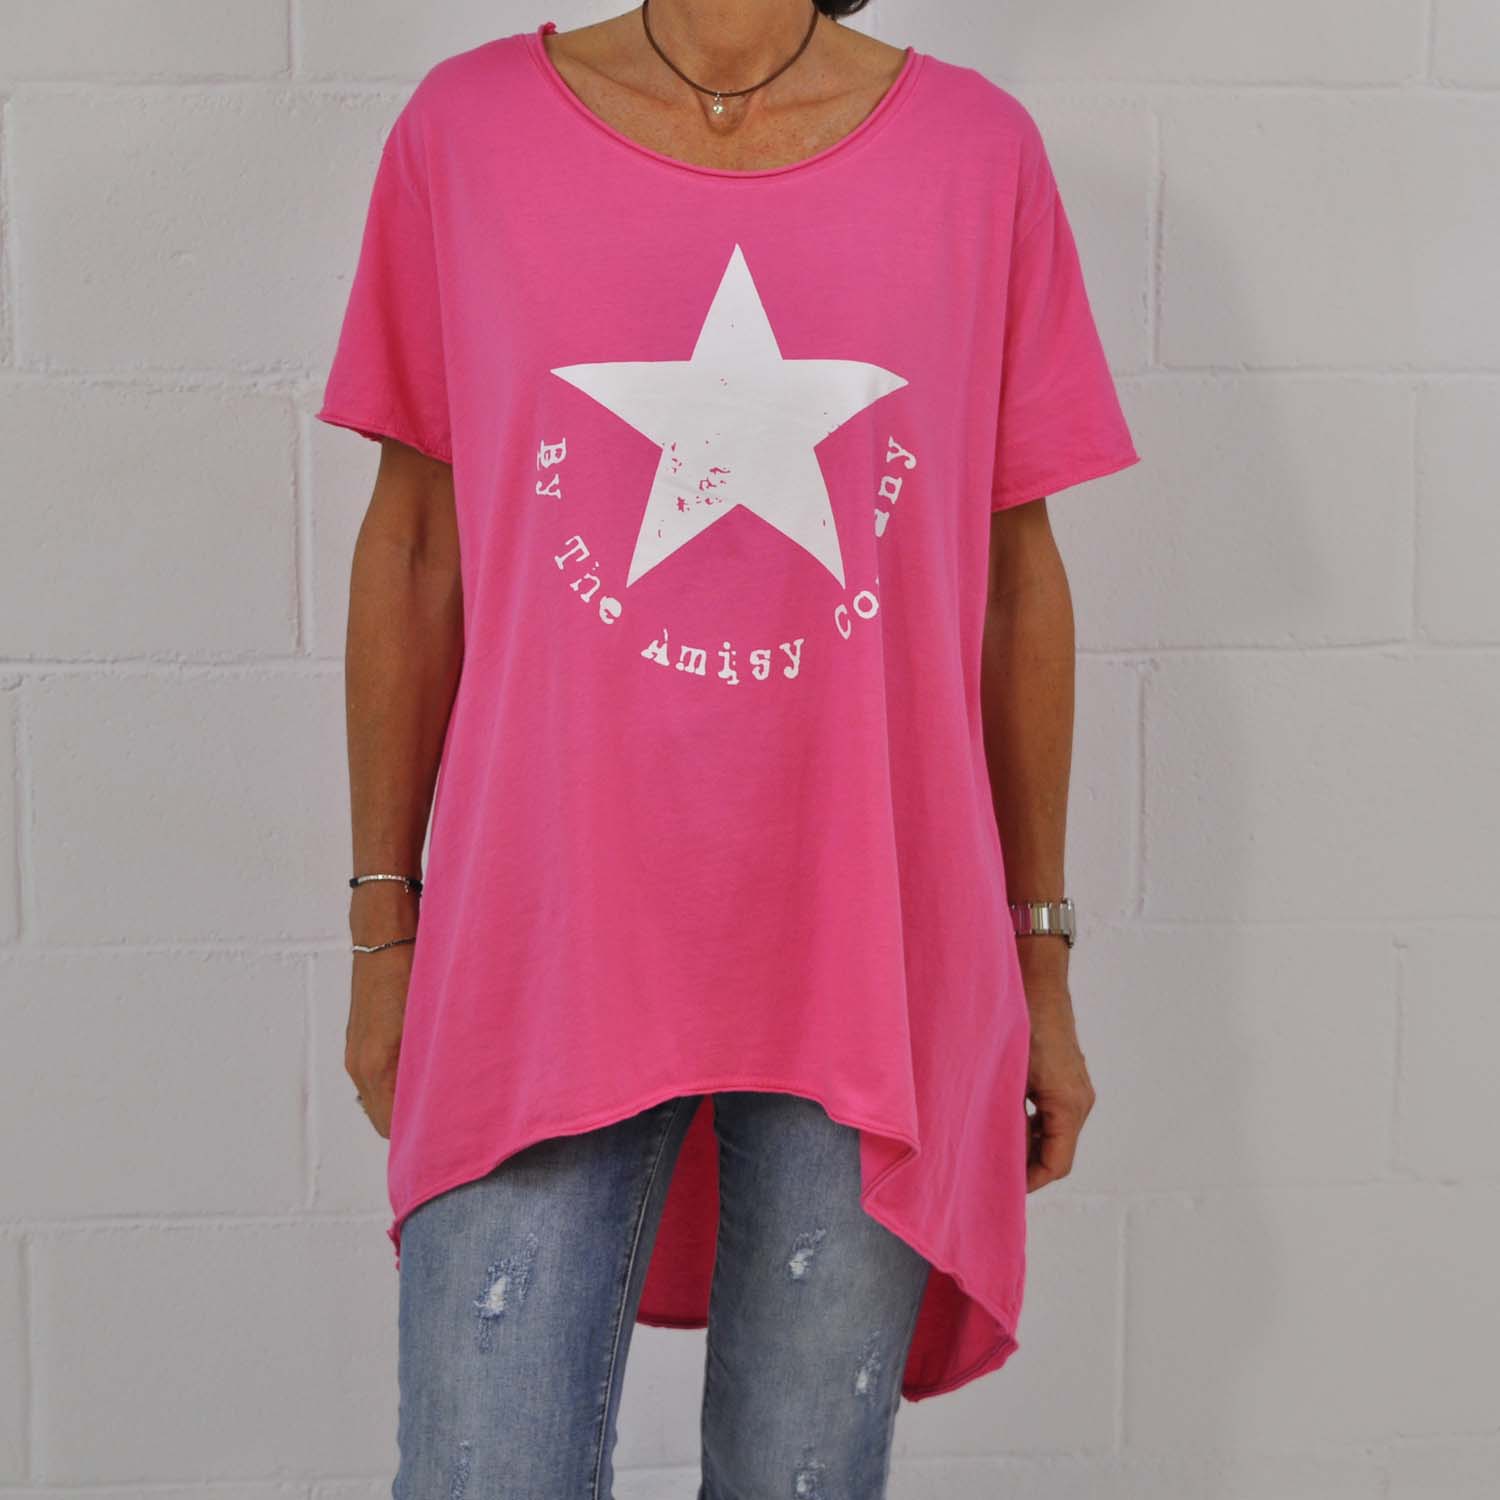 Pink Amisy asymmetric T-shirt